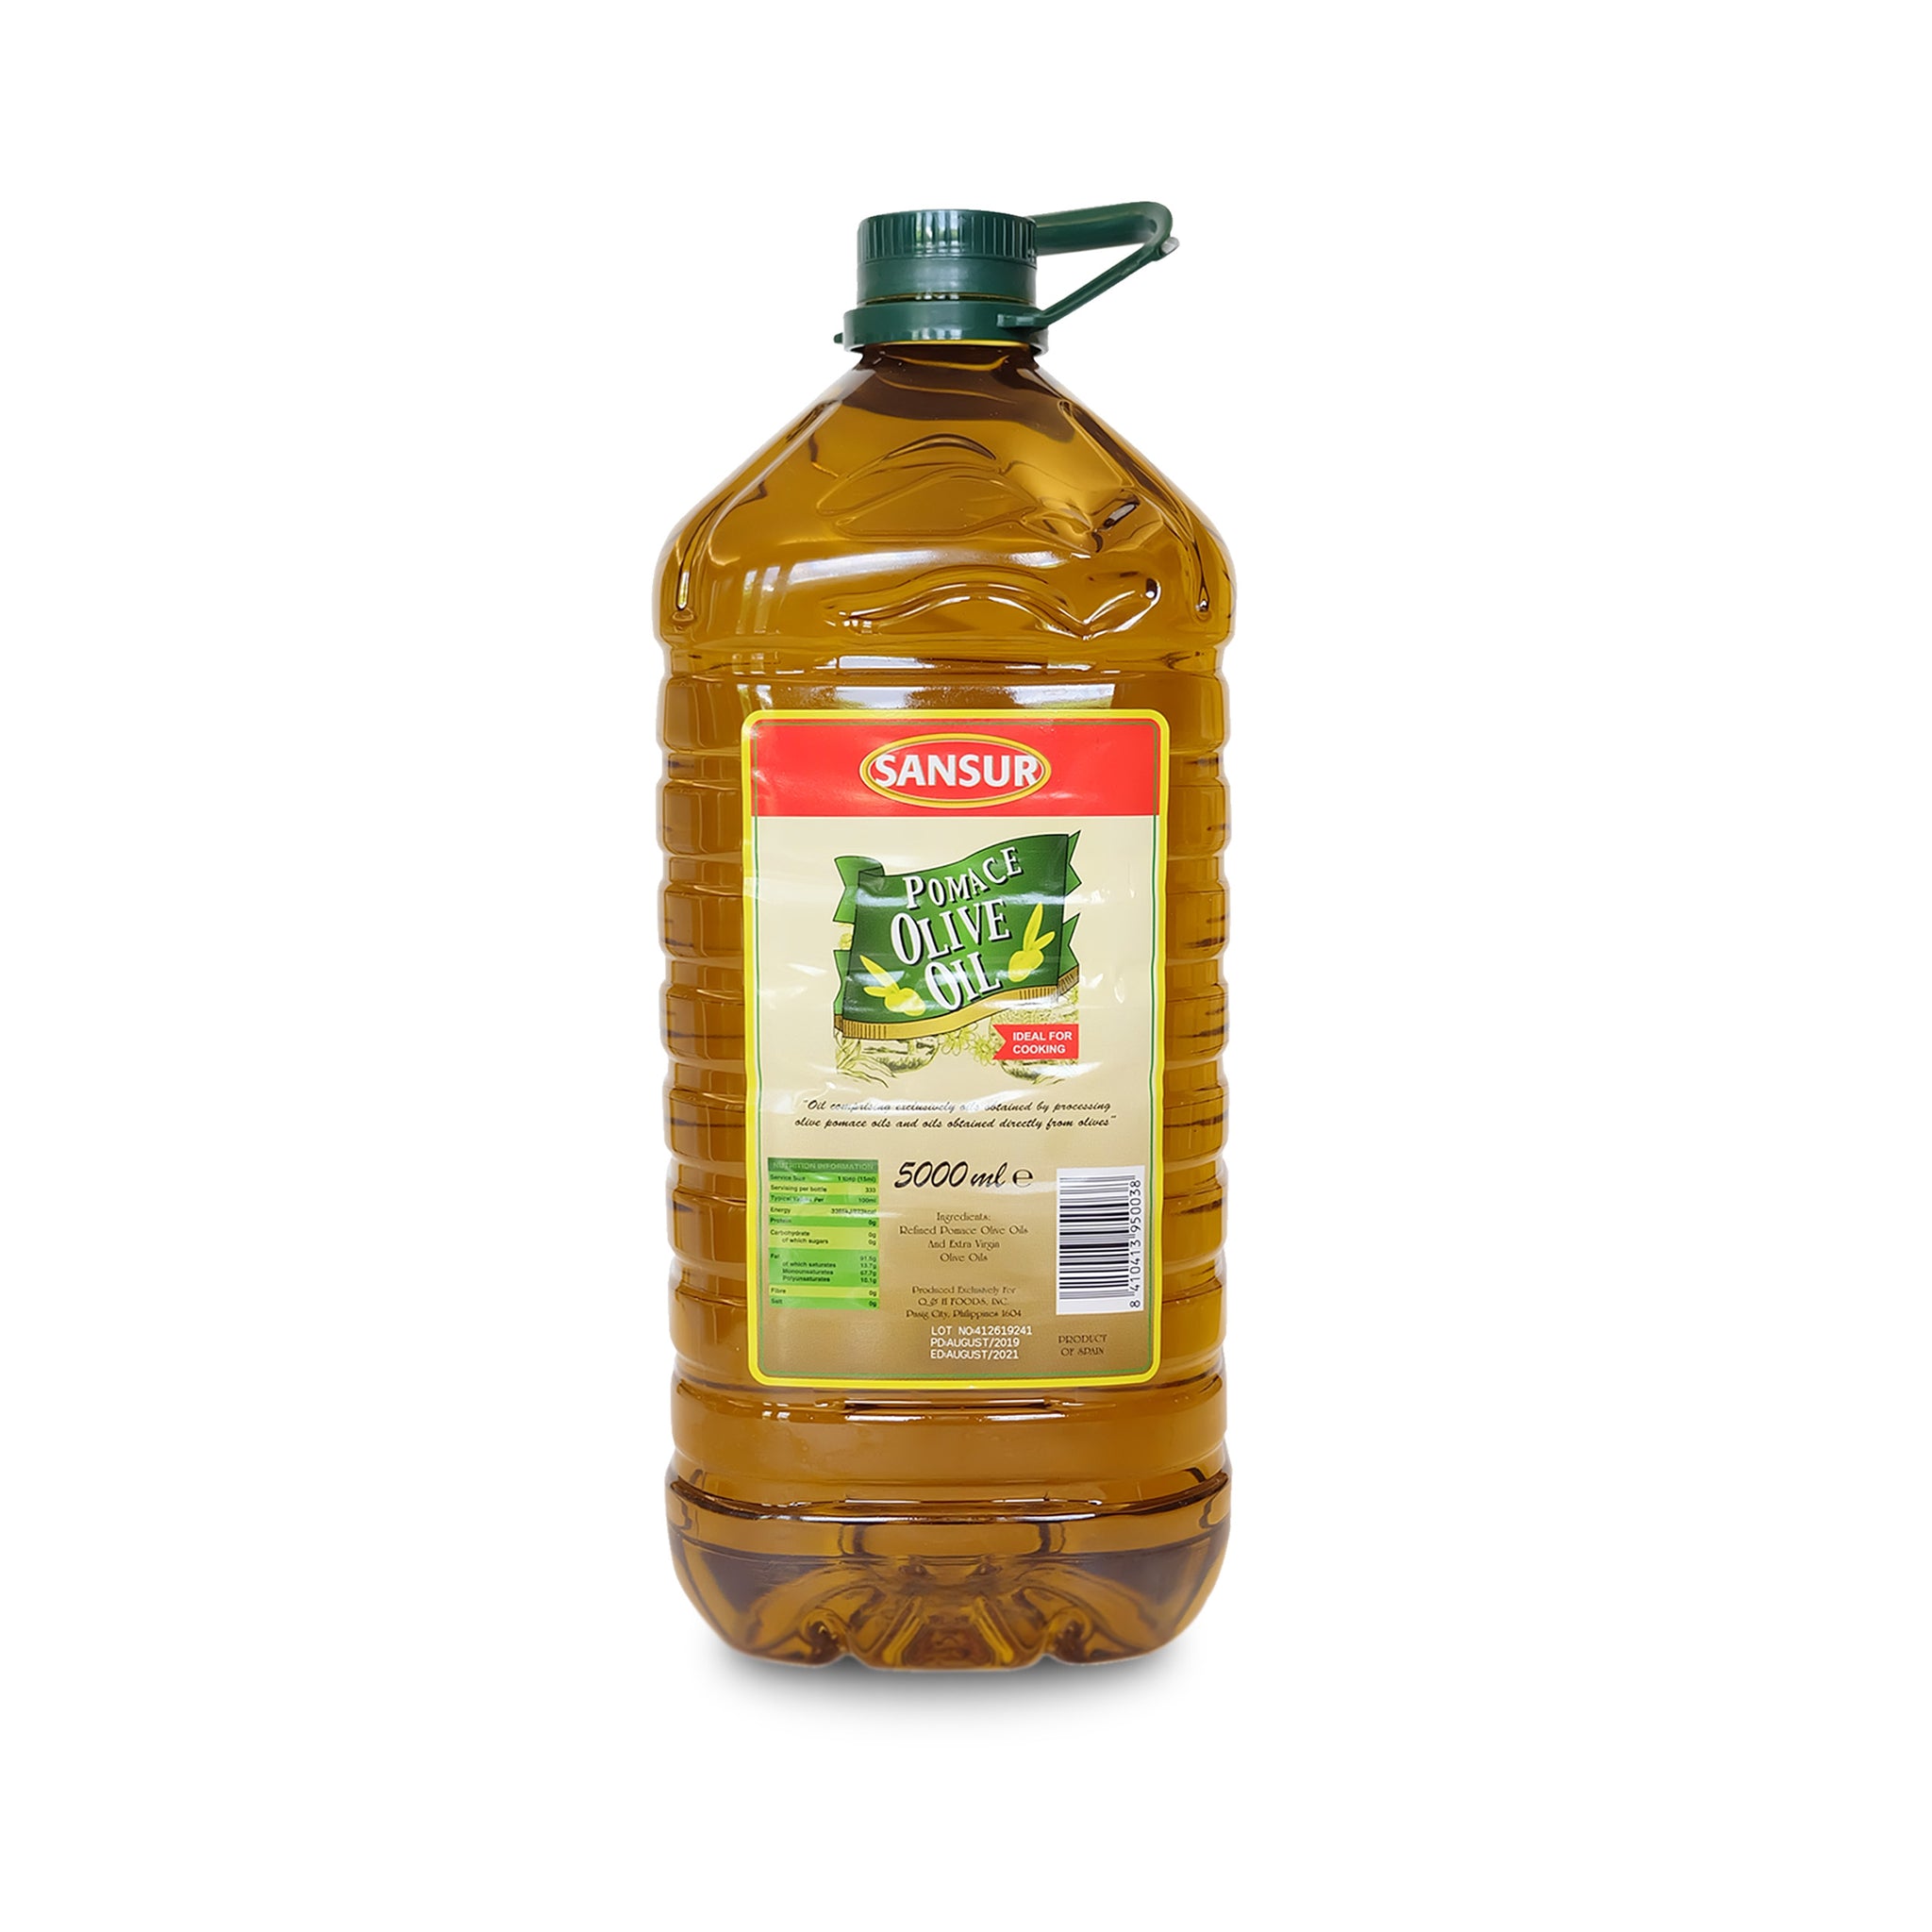 Sansur Olive Oil - Go! Salads Grocer